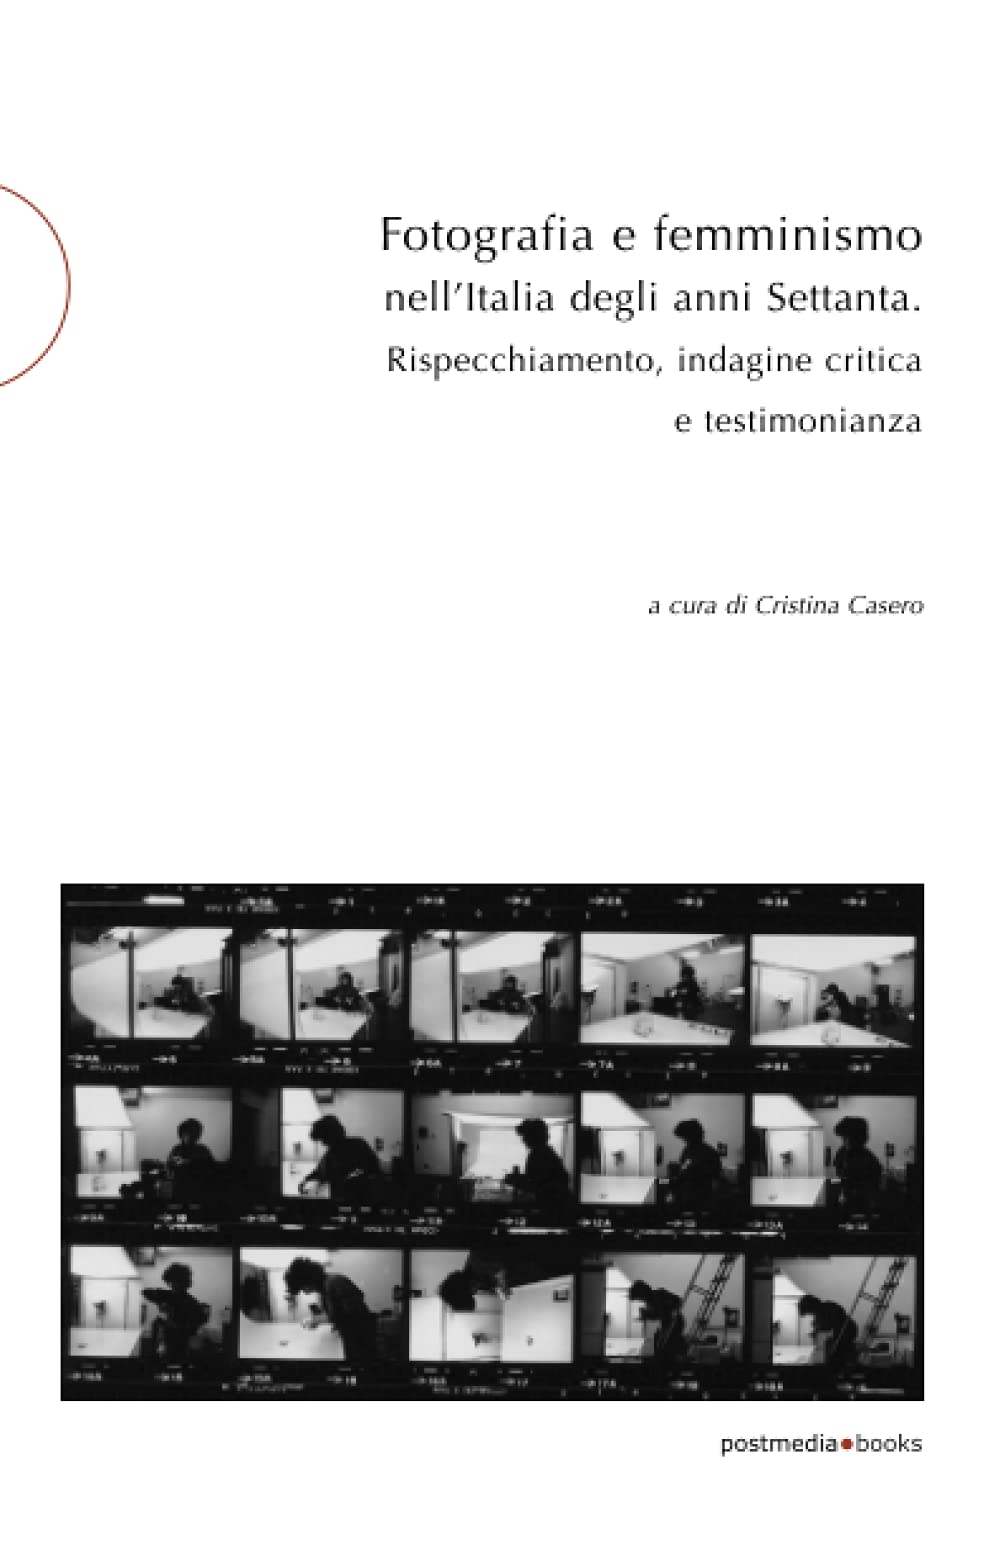 Cristina Casero (a cura di) – Fotografia e femminismo nell'Italia degli anni Sessanta. Rispecchiamento, indagine critica e testimonianza (Postmedia Books, Milano 2021)